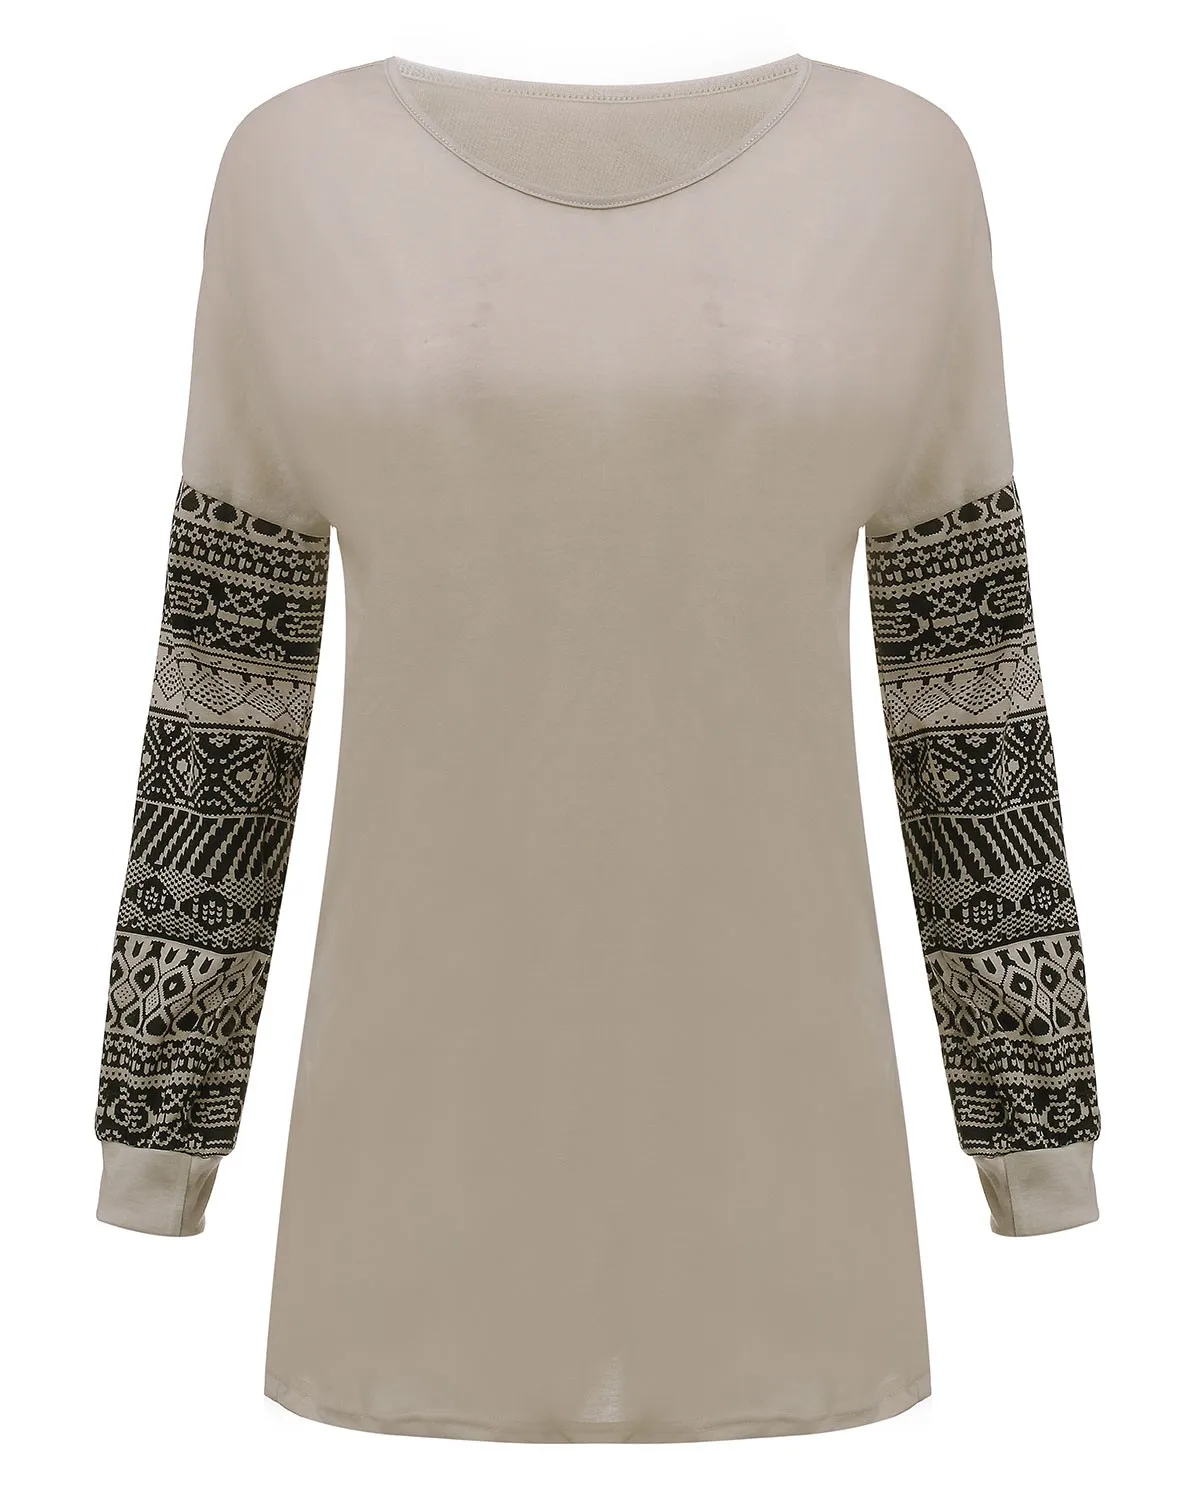 ZANZEA весенний винтажный женский топ, рубашки с длинным рукавом и круглым вырезом, элегантная повседневная тонкая футболка с принтом, больше размера 3XL - Цвет: Beige